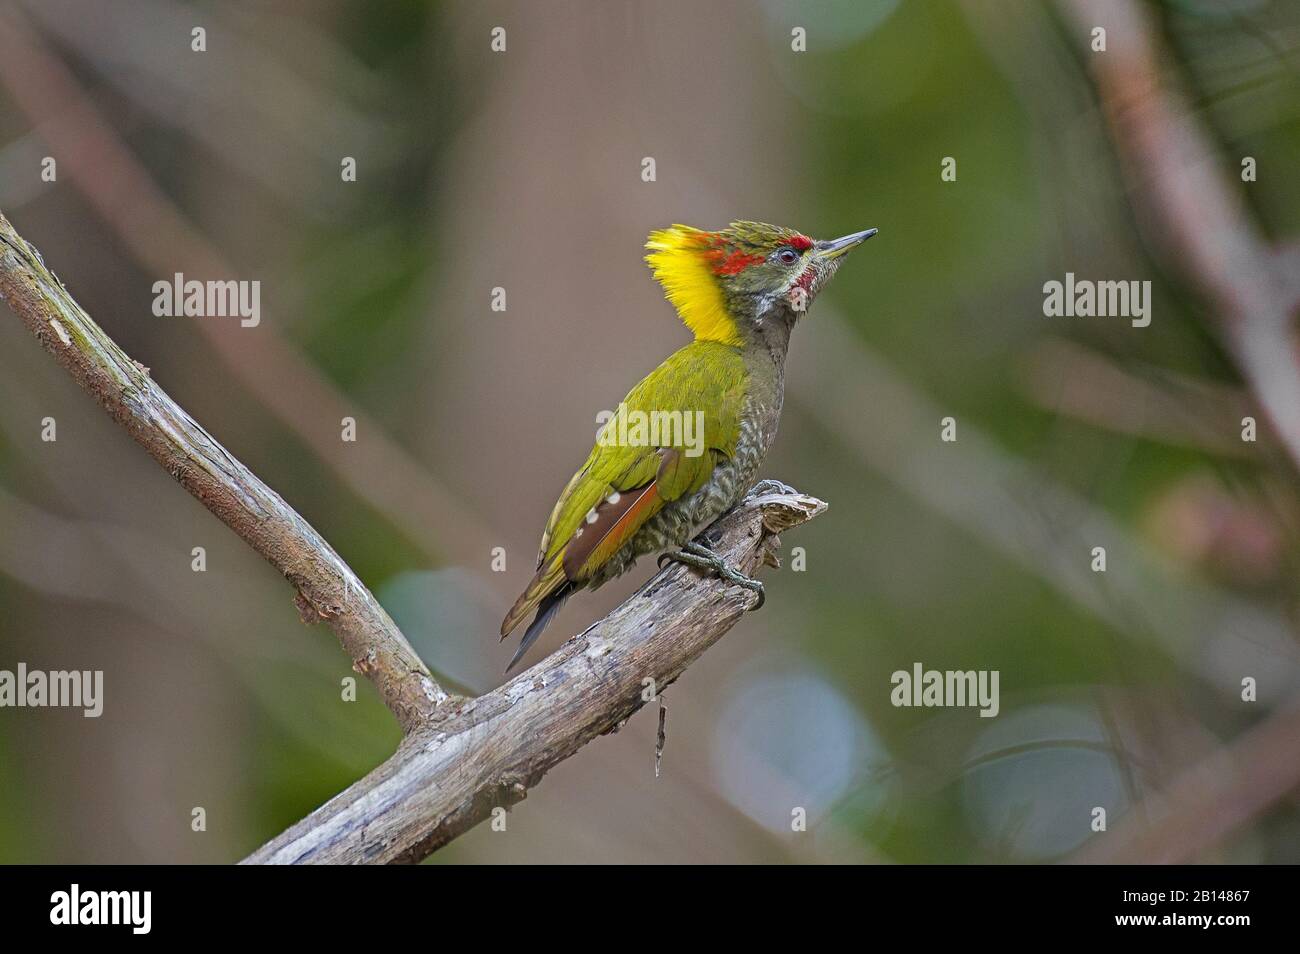 Un pájaro carpintero de pequeña yellowape en una rama de árbol Foto de stock